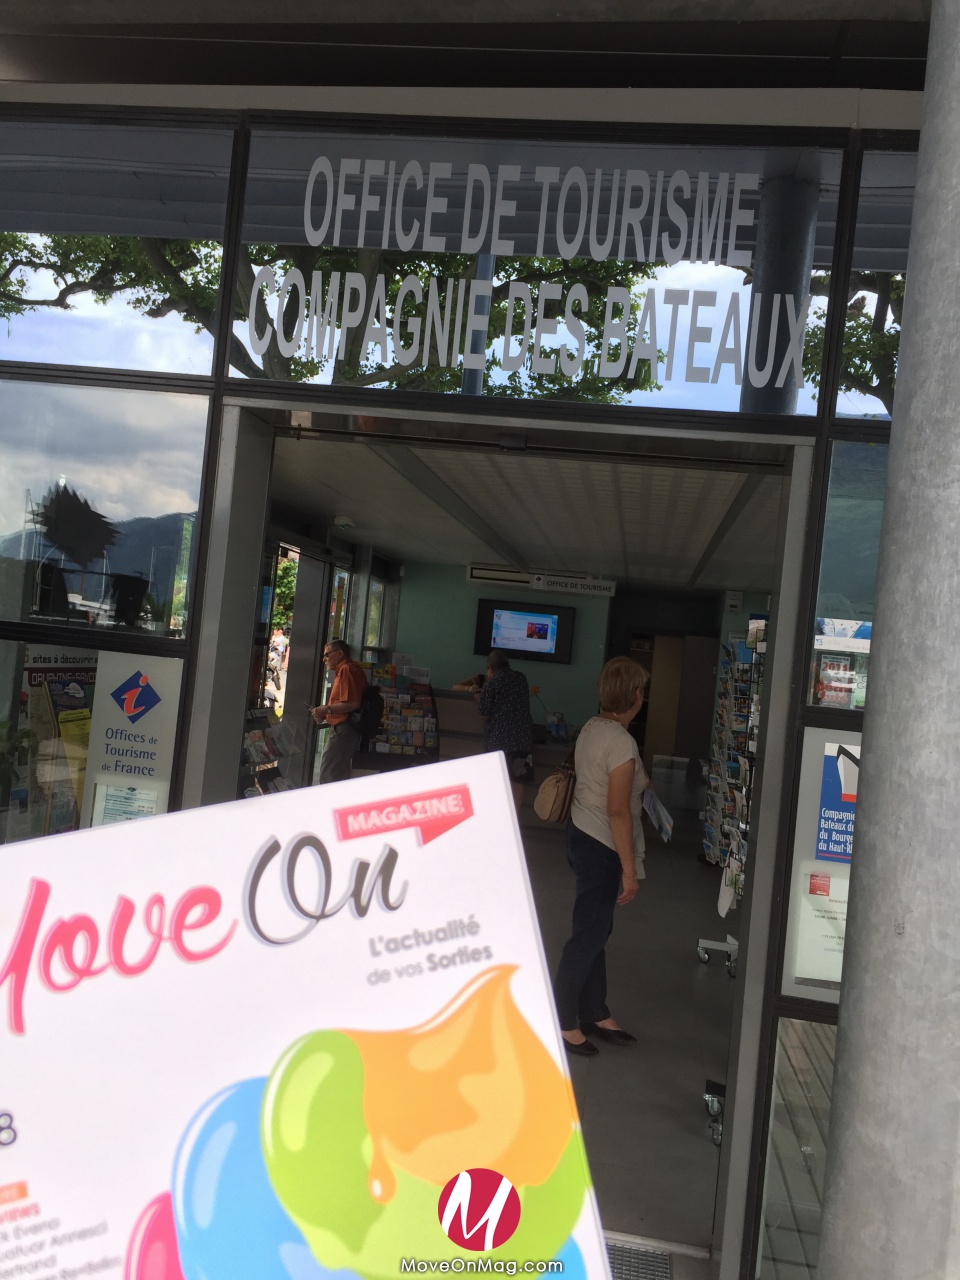 Office de tourisme - Aix-les-Bains